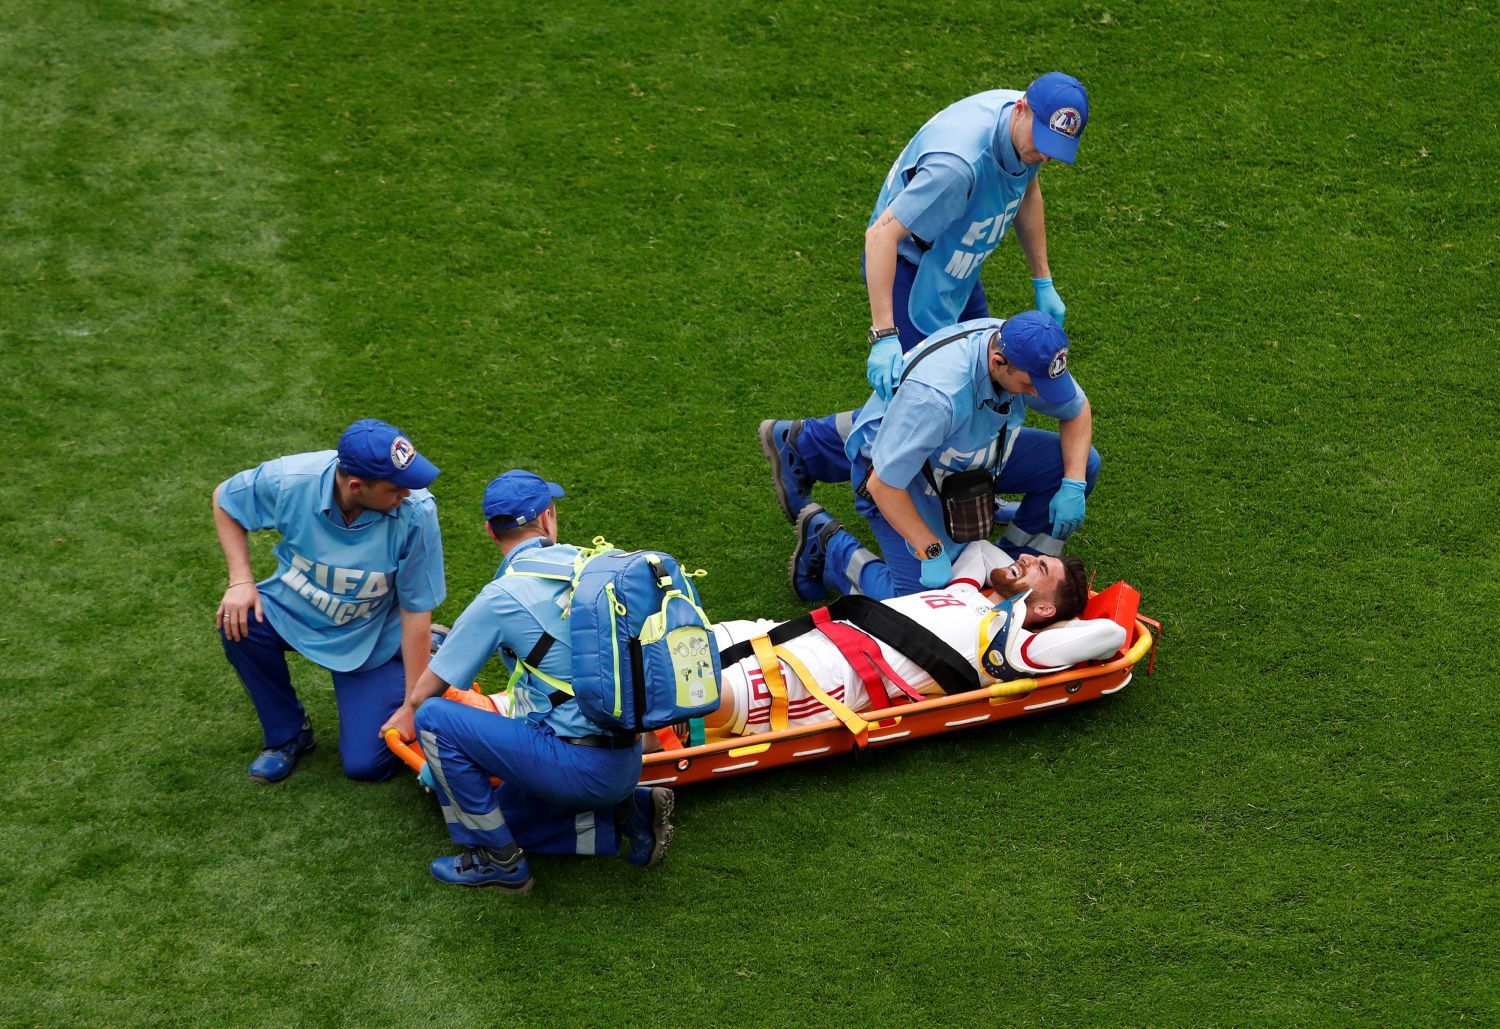 Zraněný Alírezá Džahánbachš v zápase Maroko - Írán na MS 2018